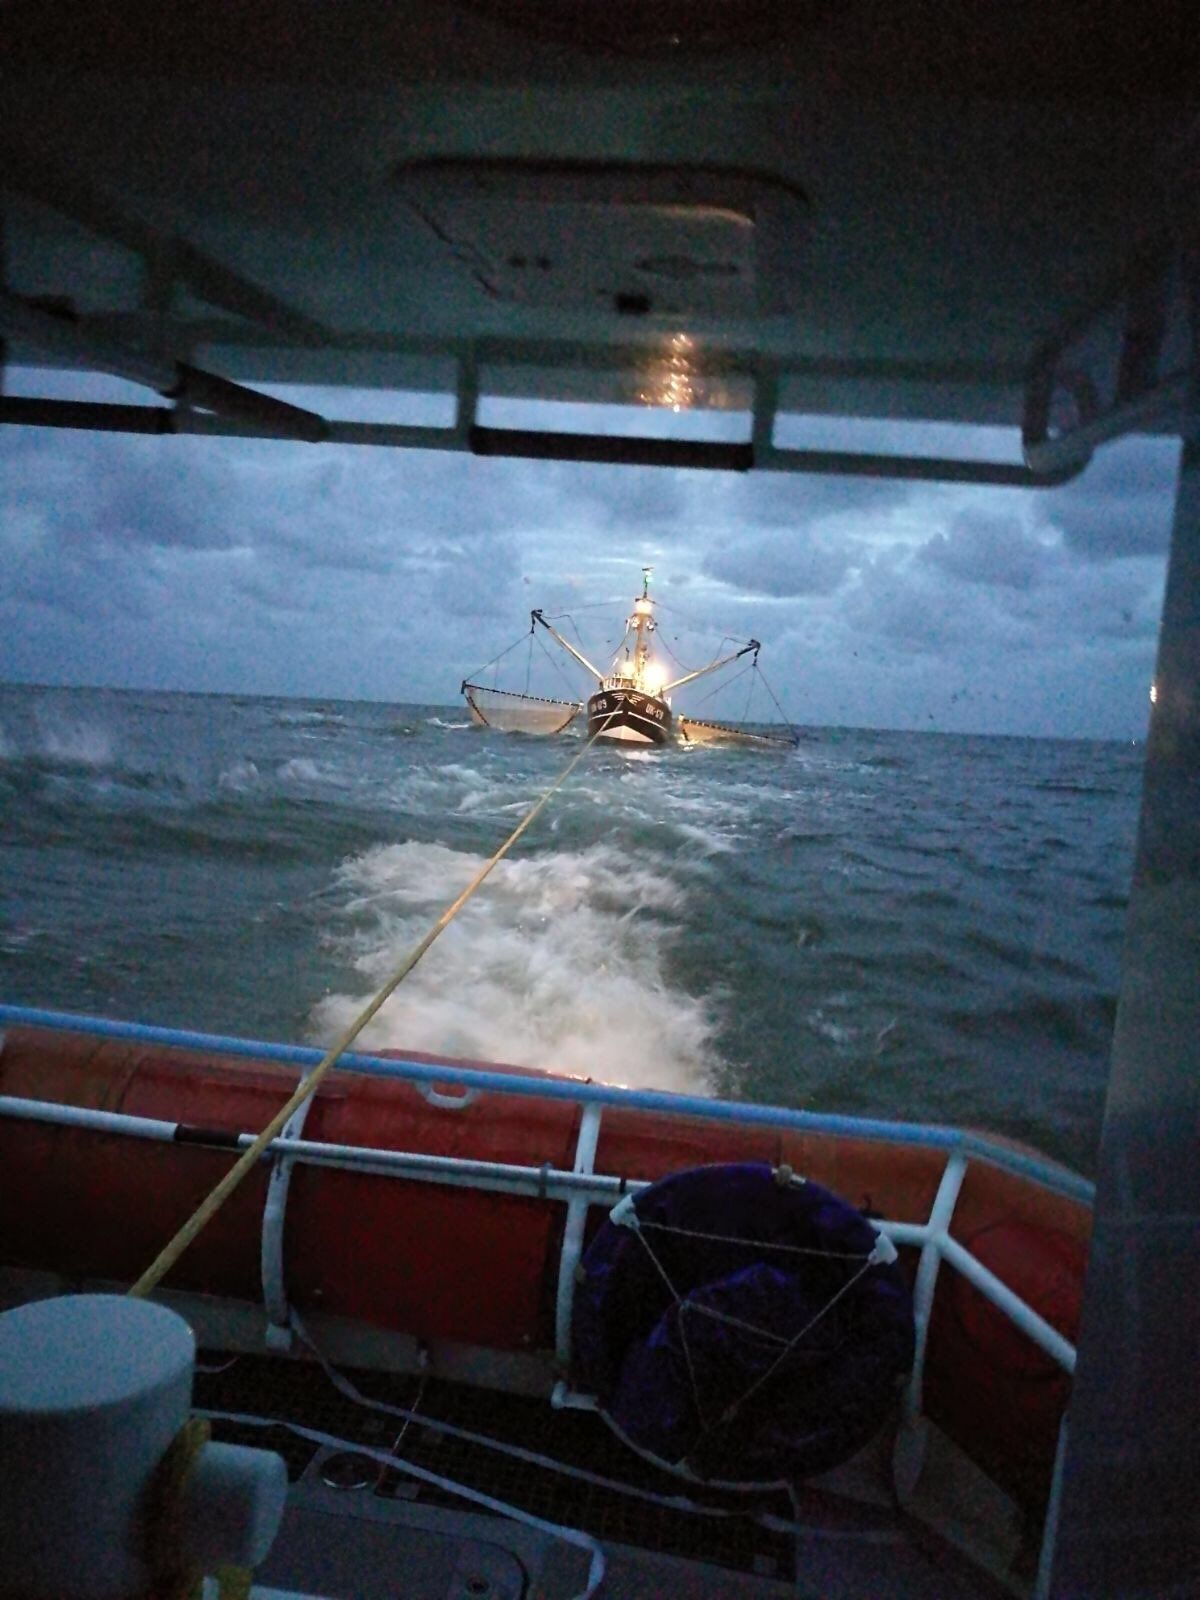 KNRM Egmond aan Zee heeft de kotter op sleep, fotograaf KNRM Egmond aan Zee